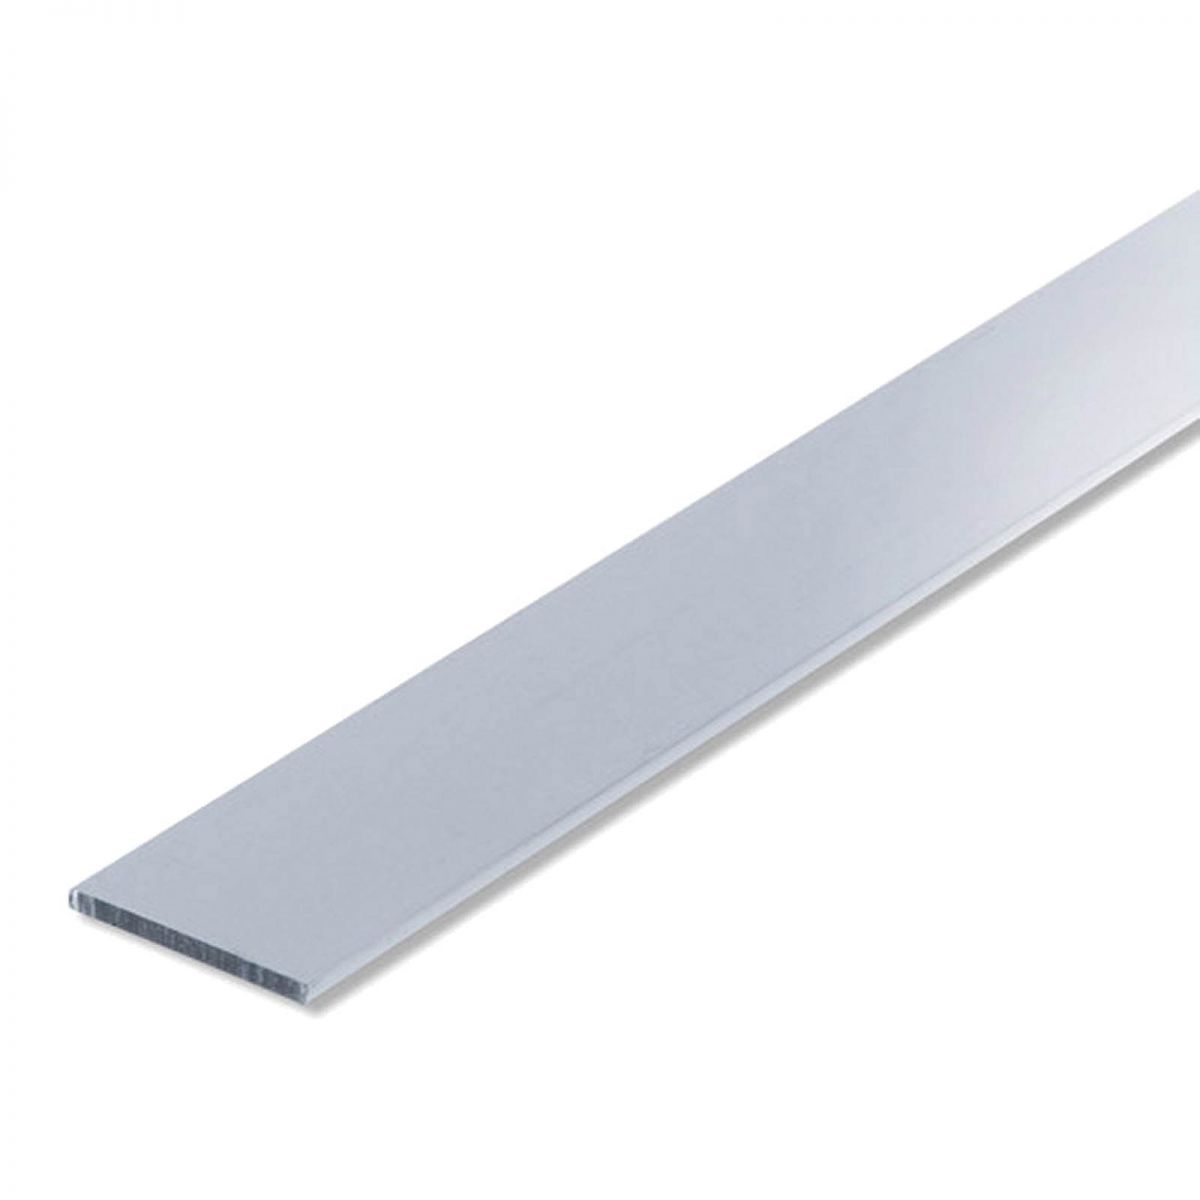 Barre aluminium plate -  30mm x 2mm - Long: 1m